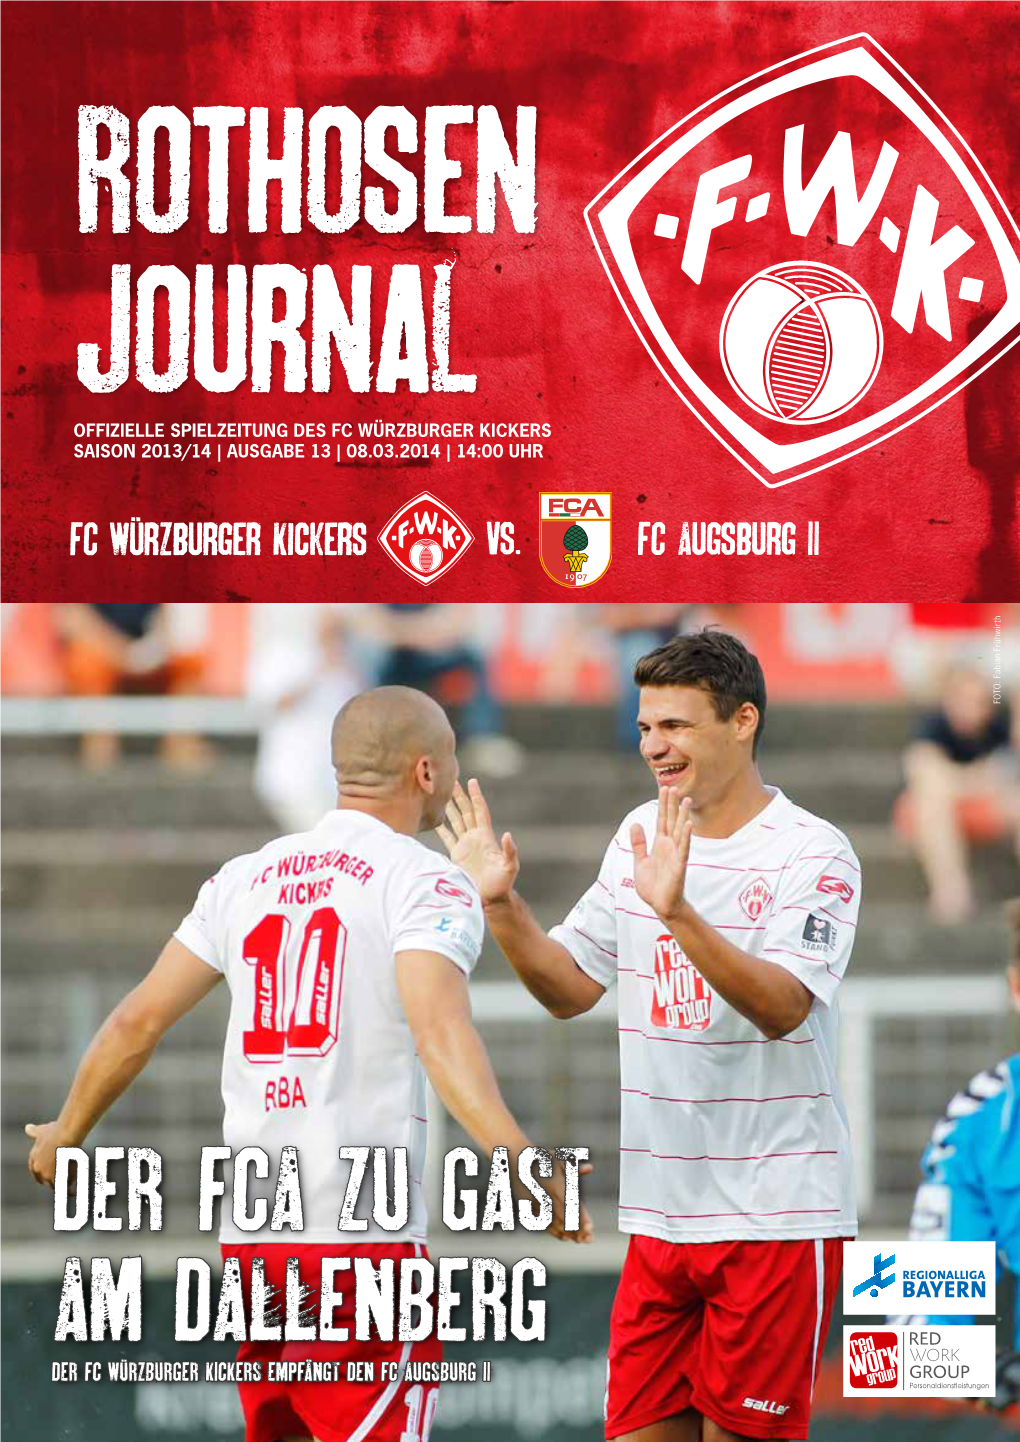 FC Würzburger Kickers FC Augsburg II